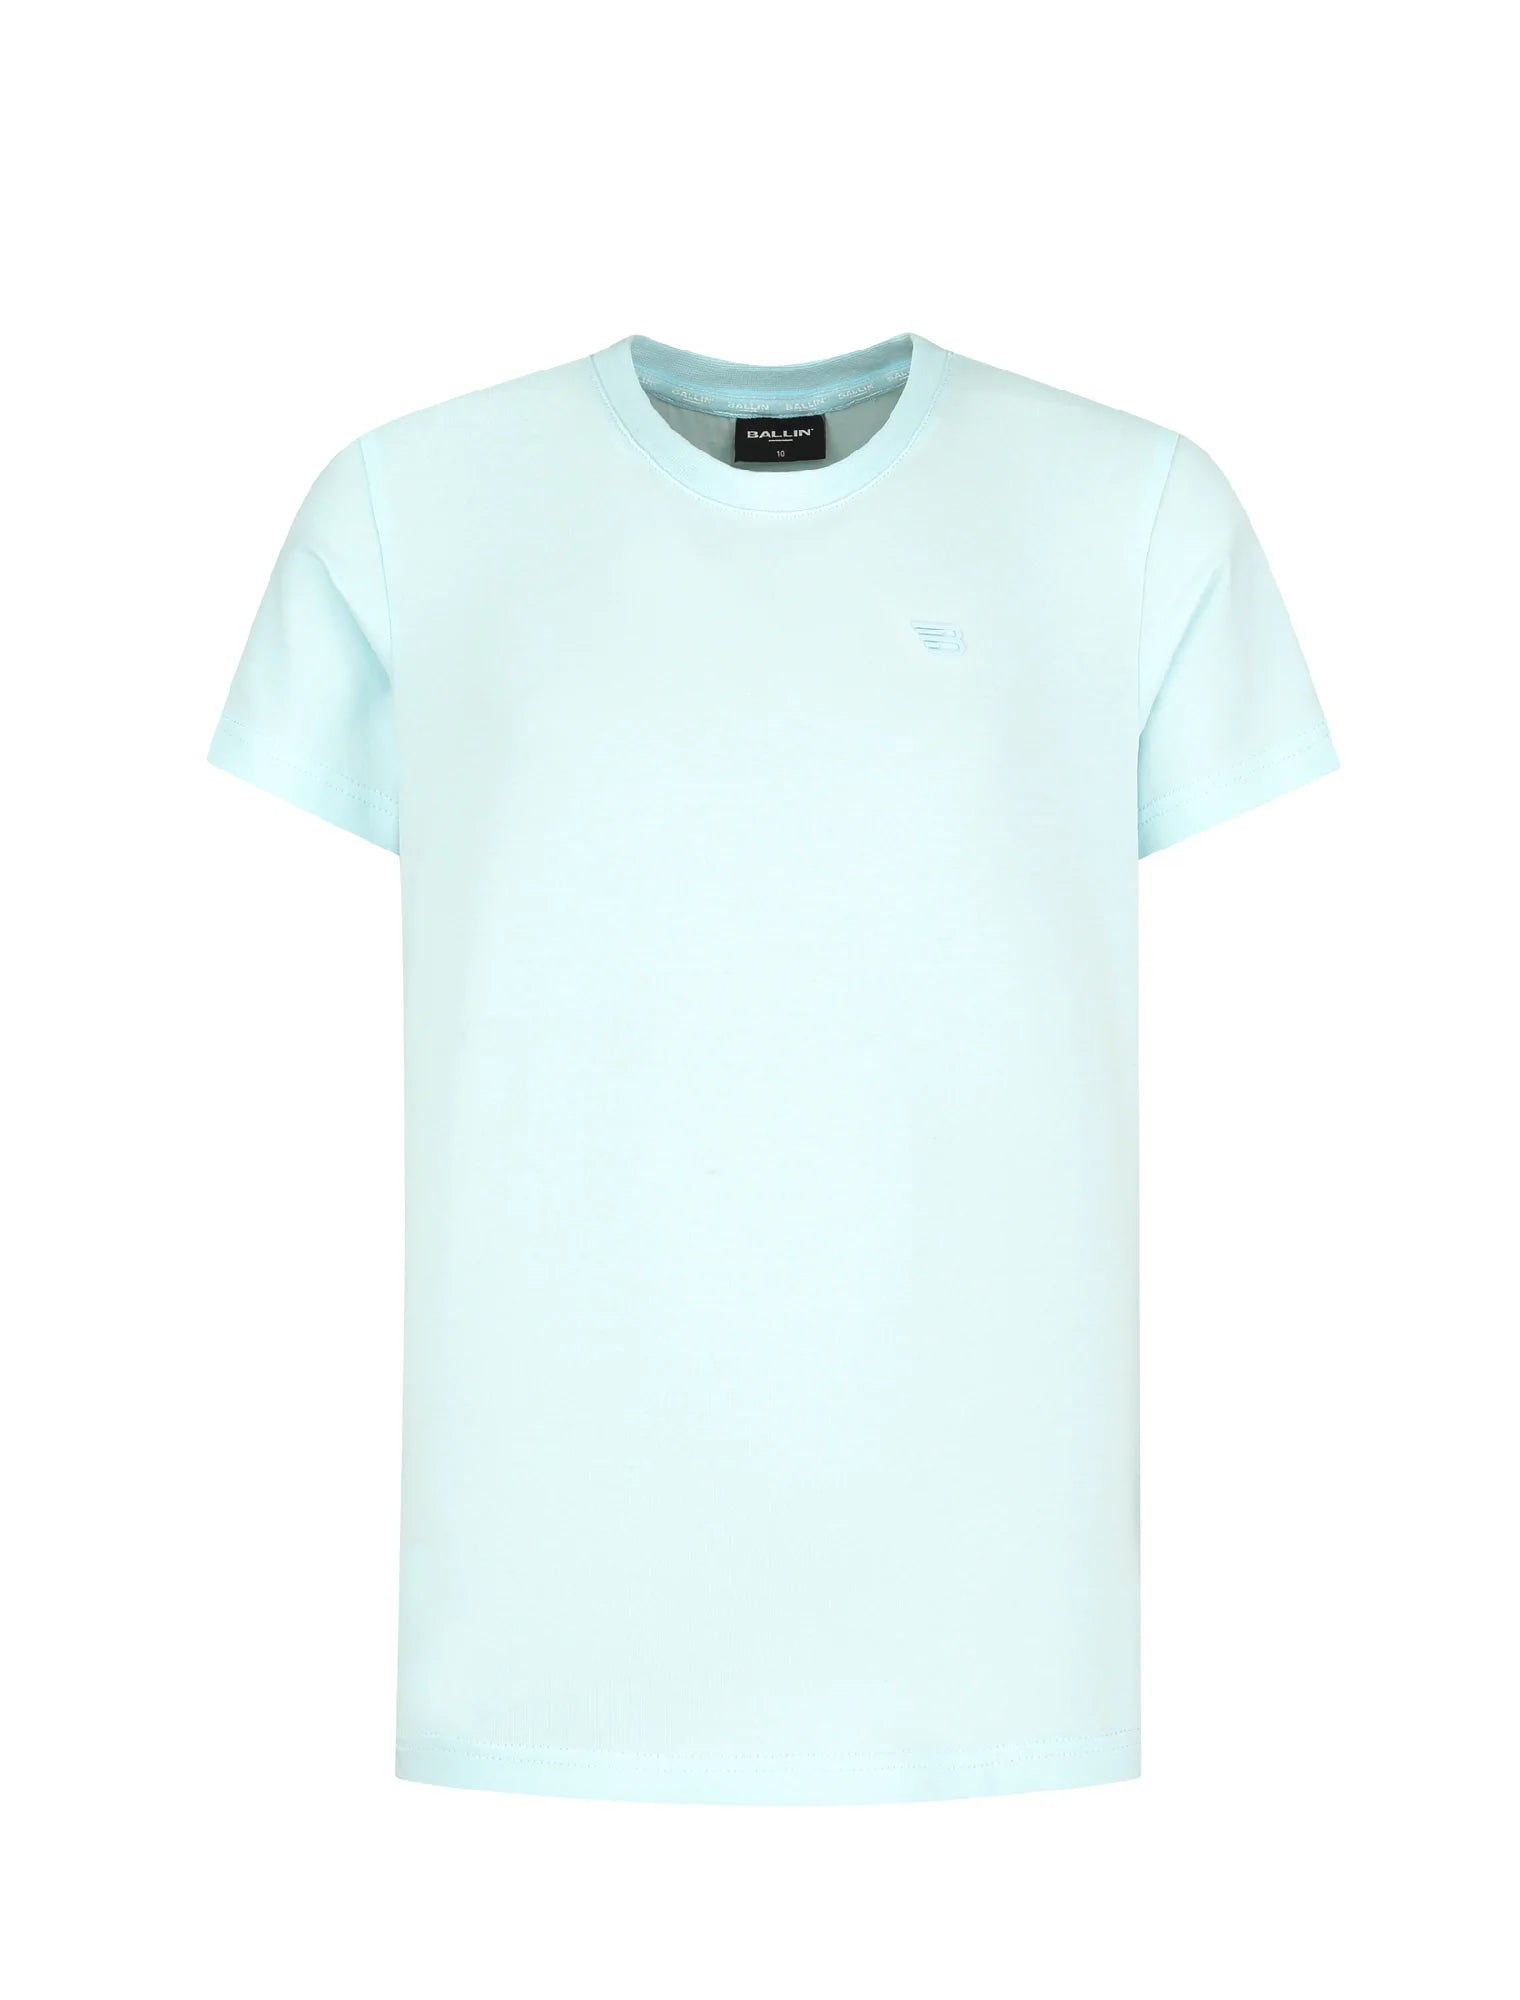 Unisexs T-shirt van Ballin Amsterdam in de kleur Light Blue in maat 176.